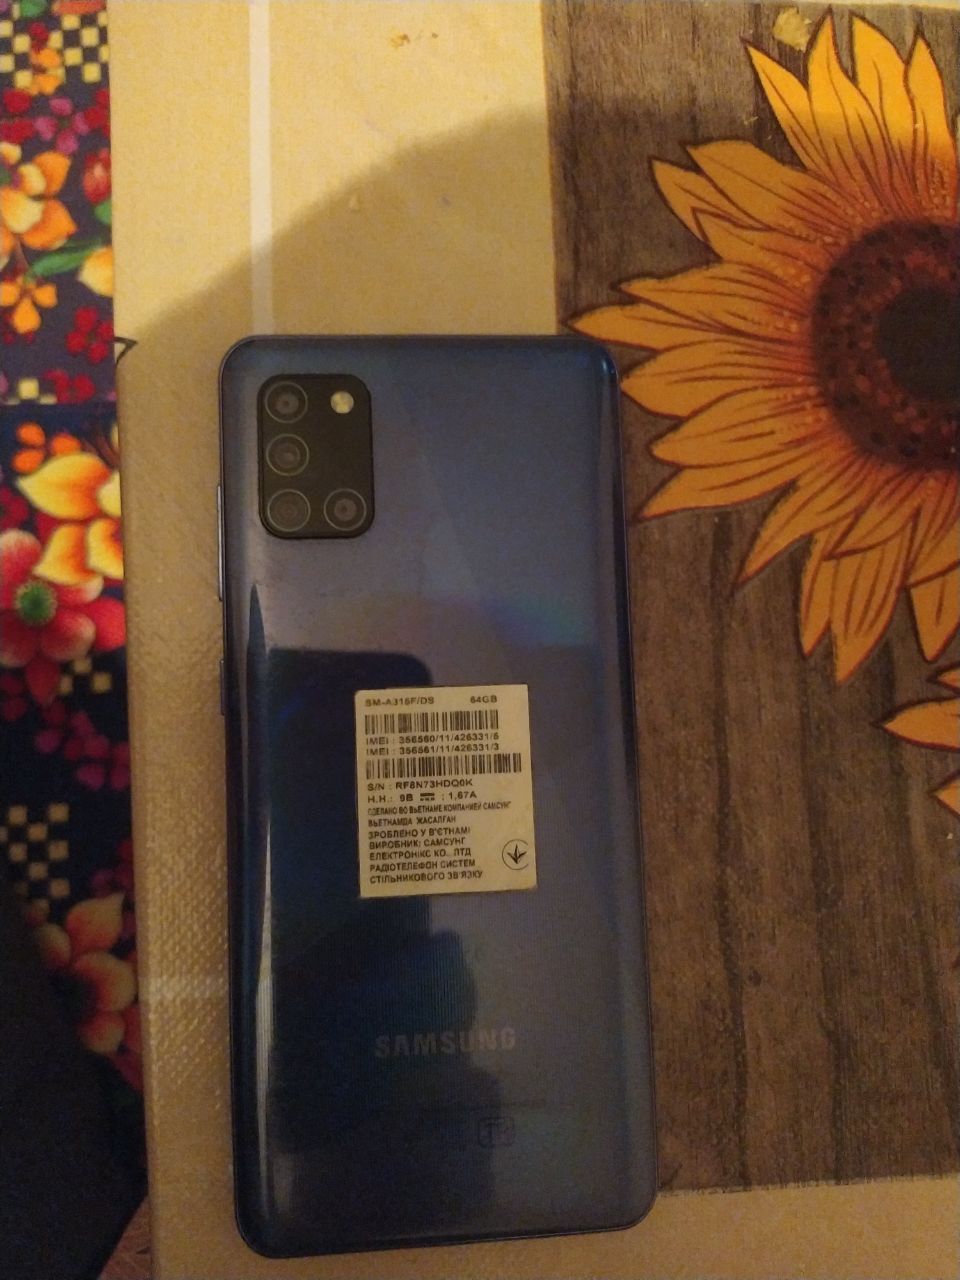 Samsung Galaxy A31 yangi ko‘p ishlatilmagan